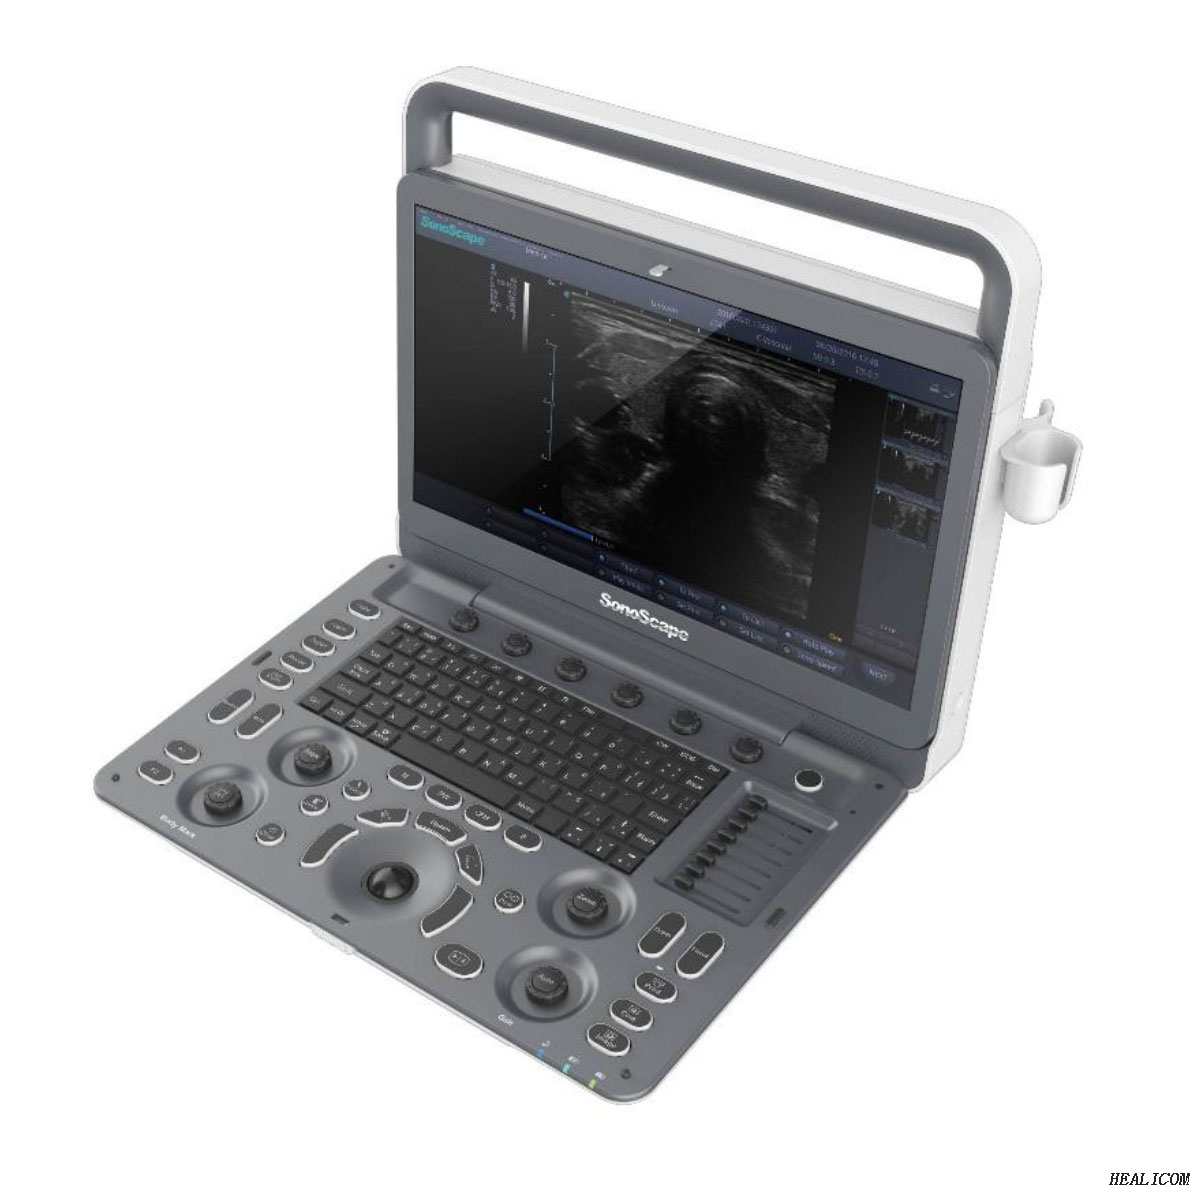 L'hôpital professionnel SonoScape E2 utilise un système de diagnostic complet de la machine à ultrasons Doppler couleur numérique